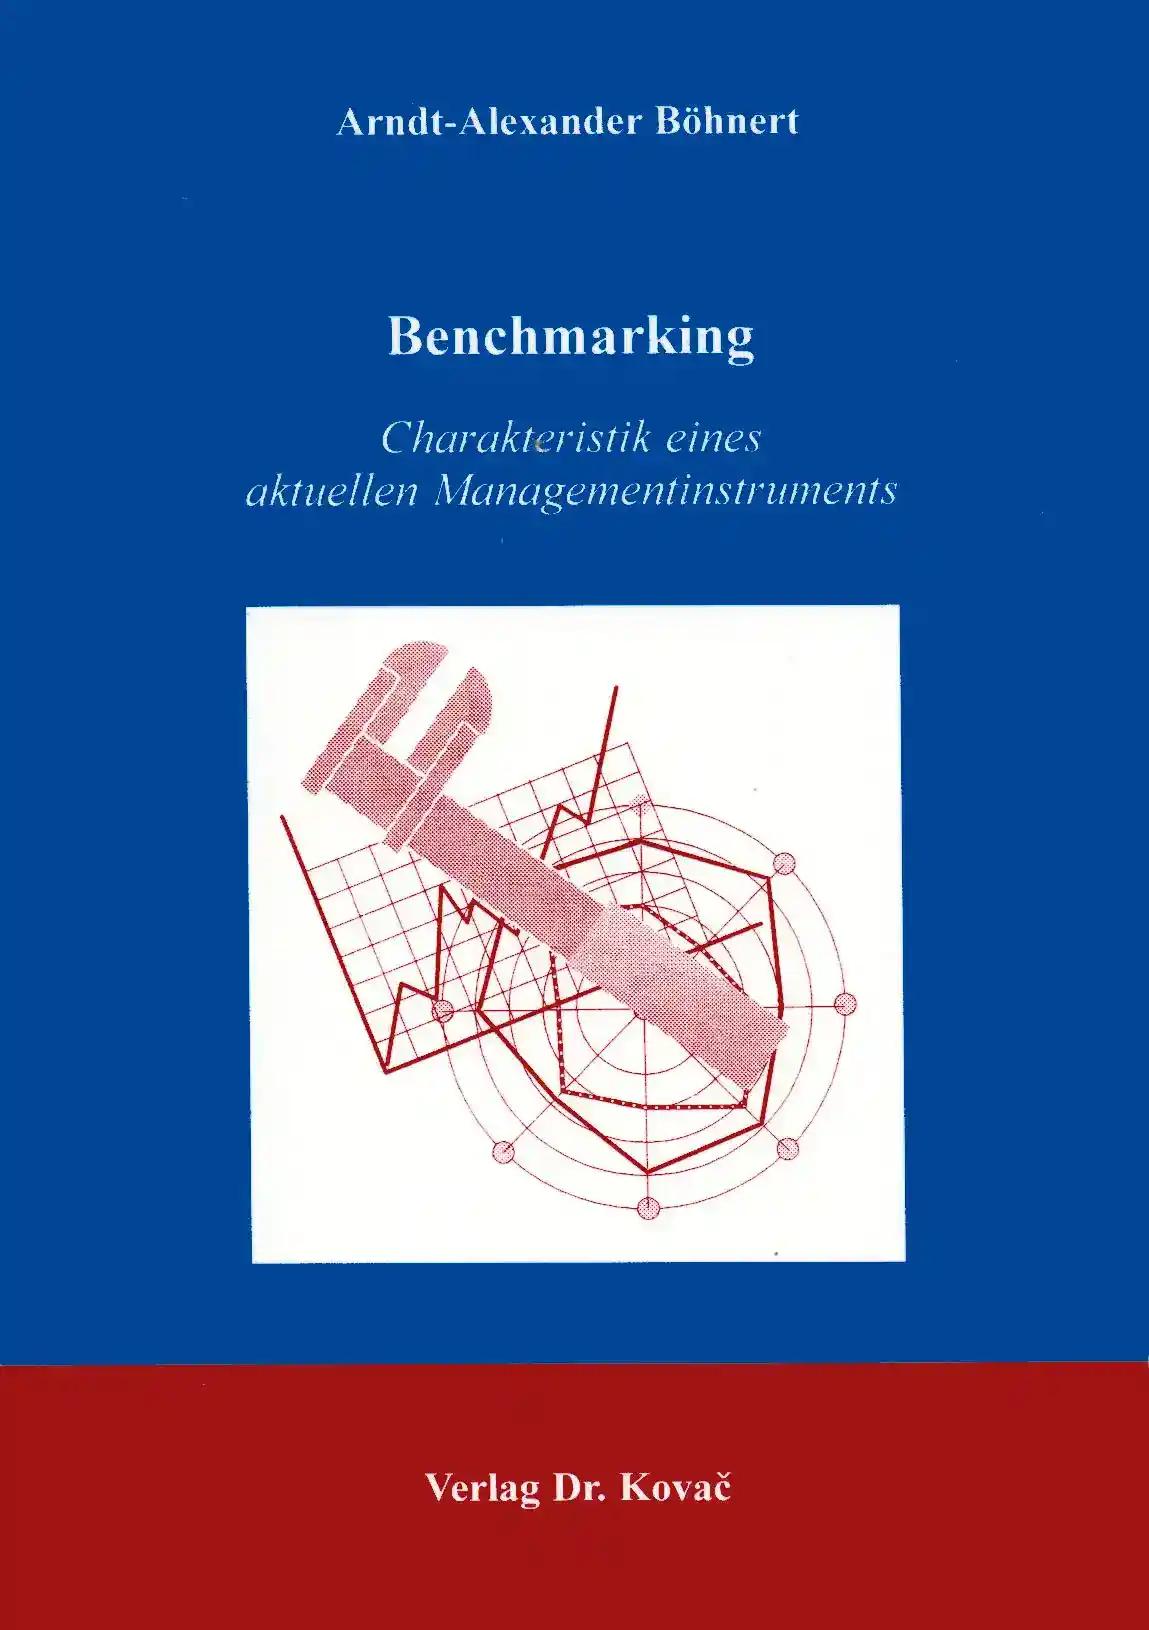 Benchmarking - Charakteristik eines aktuellen Managementinstruments, - Arndt-Alexander BÃ hnert